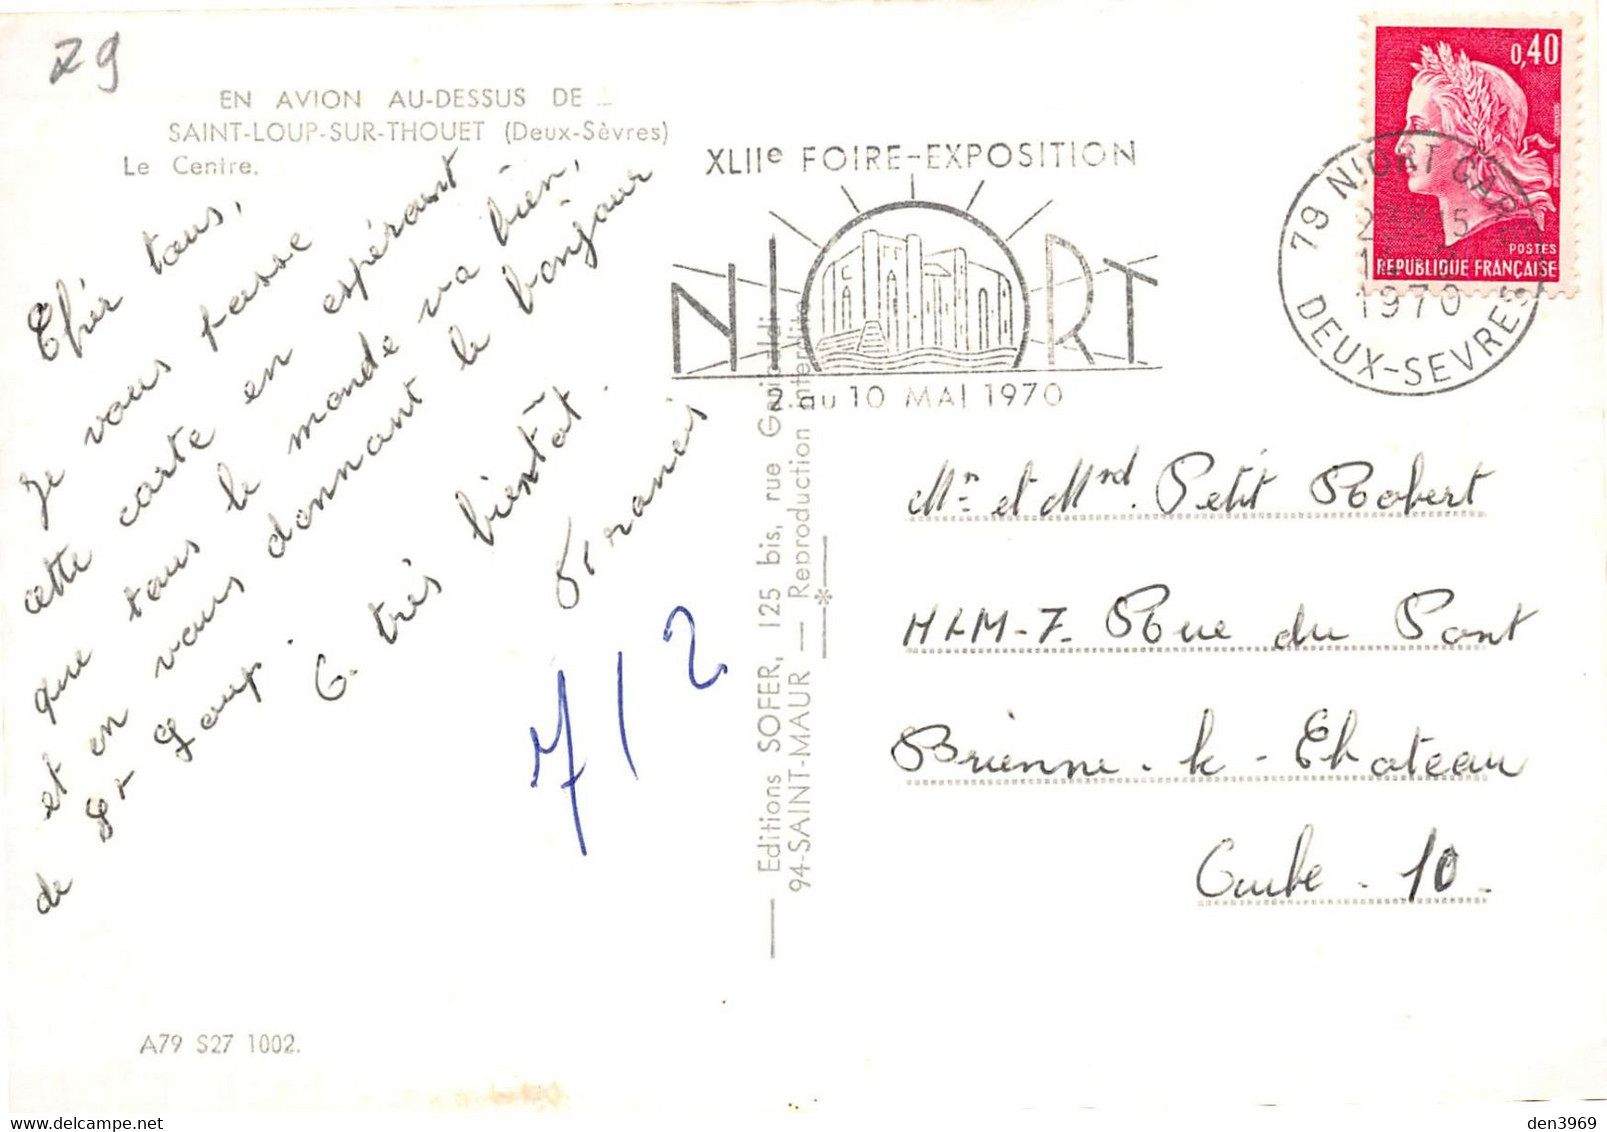 SAINT-LOUP-sur-THOUET - Le Centre - Philatélie Flamme XVIIe Foire-Exposition Niort, 1970 - Saint Loup Lamaire